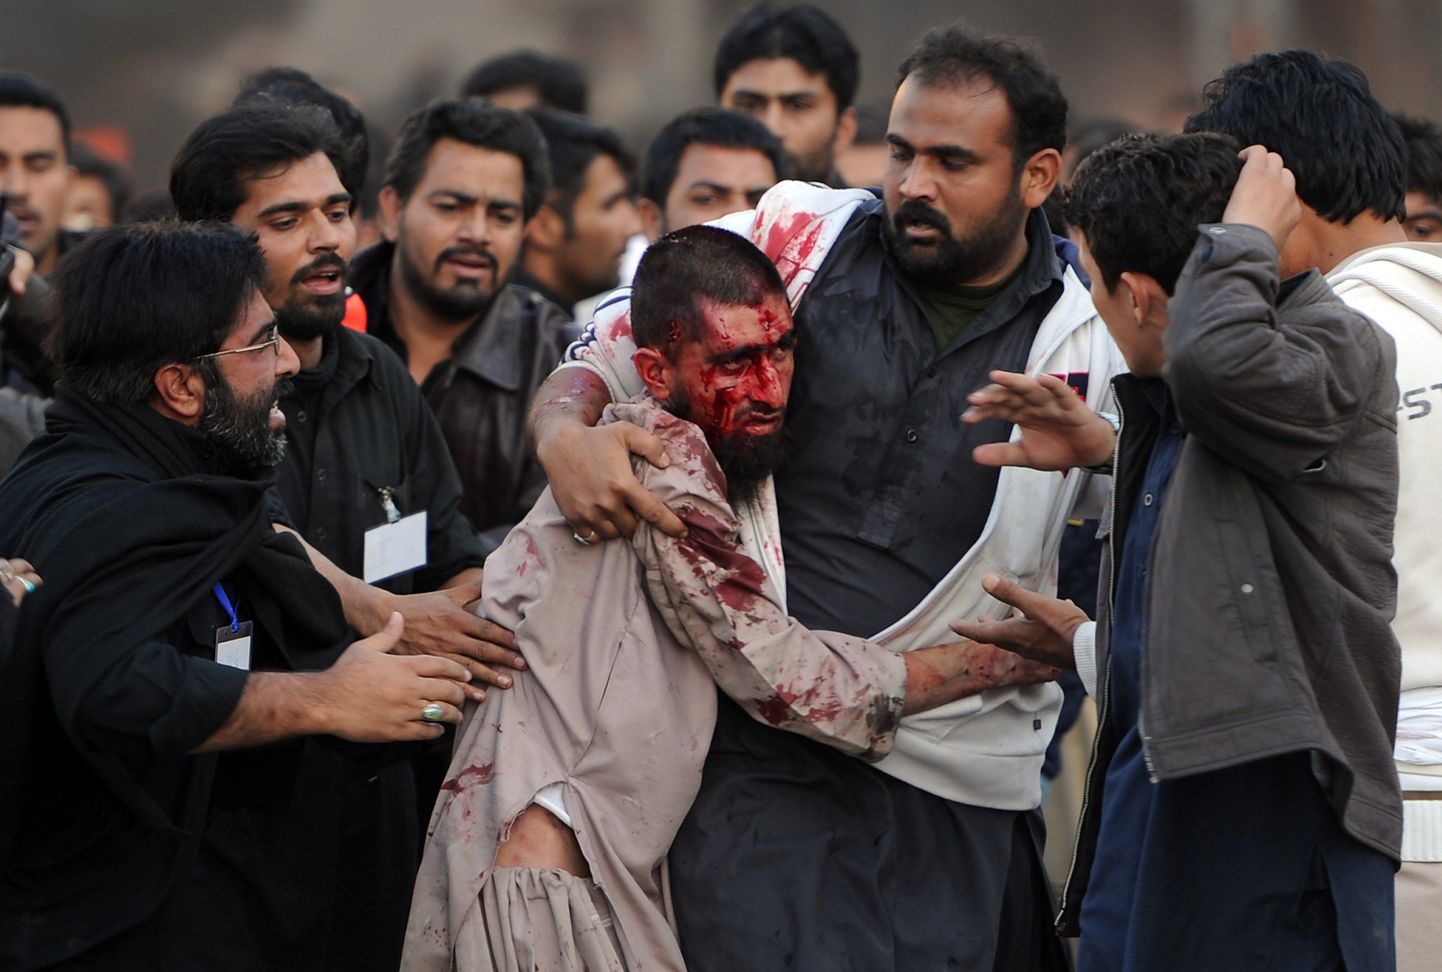 Rawalpindi šiidid abistavad viga saanud sunniiti.